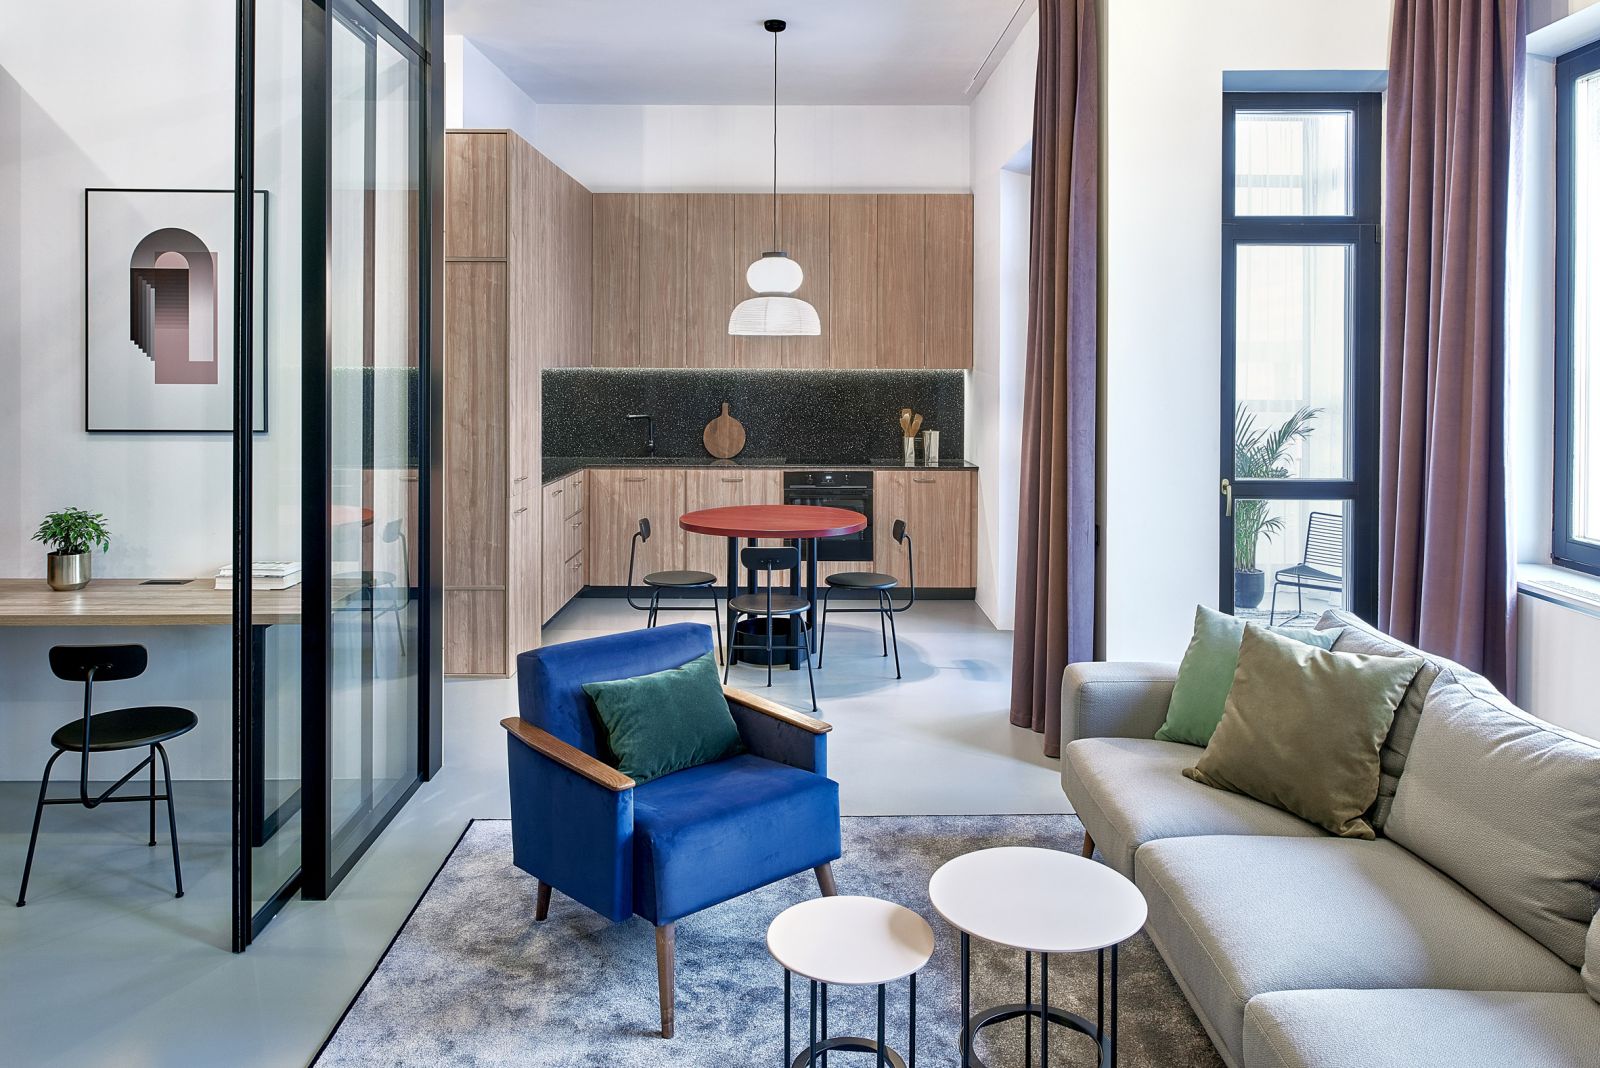 60% màu sắc trong phòng là tông màu xanh – xám trung tính, từ sàn, sofa, tường, thảm… khiến không gian trông rộng mở và sáng sủa hơn